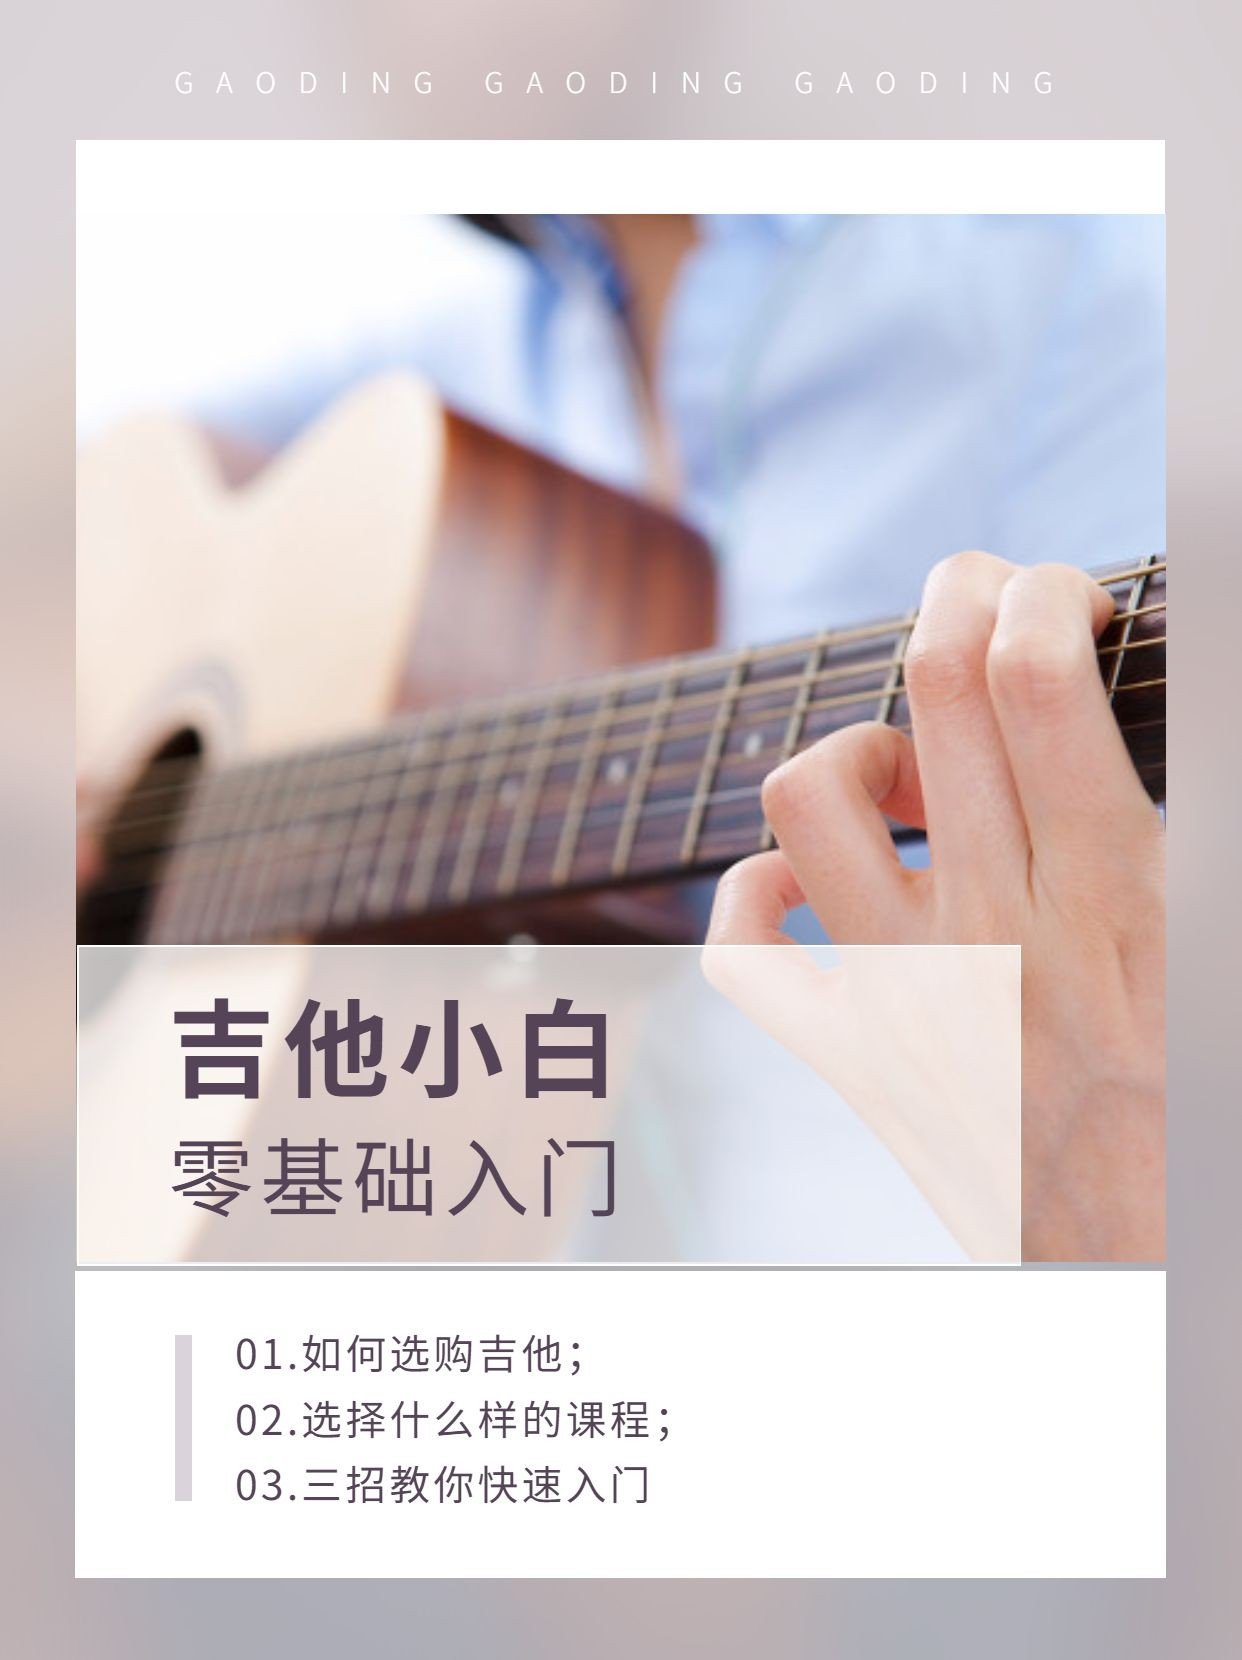 成人乐器吉他课程入门宣传介绍小红书配图预览效果